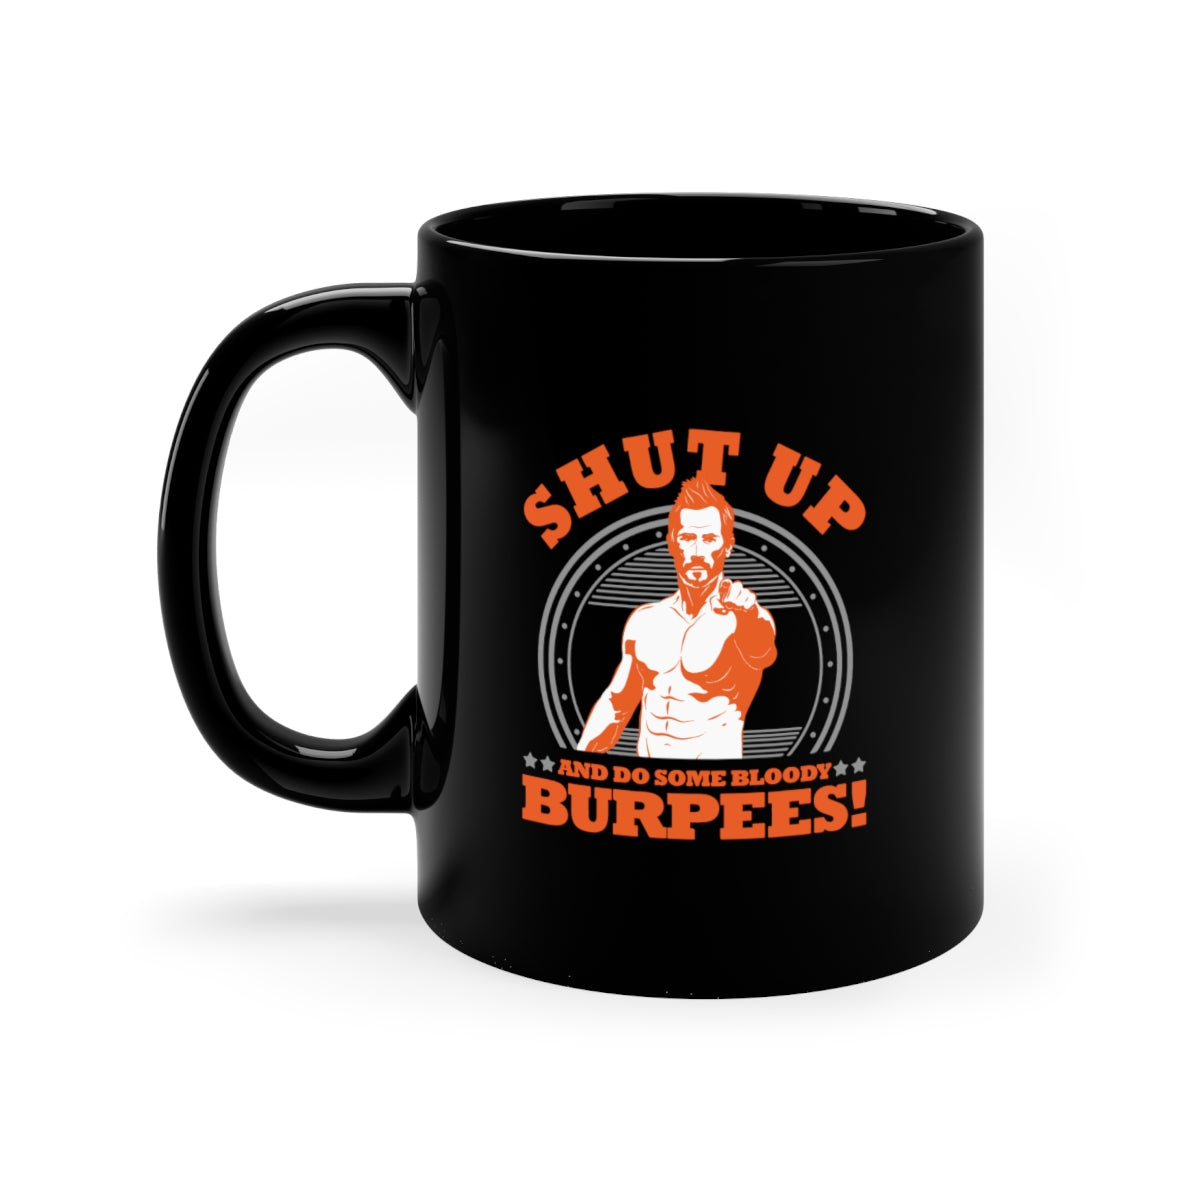 Burpees Mug